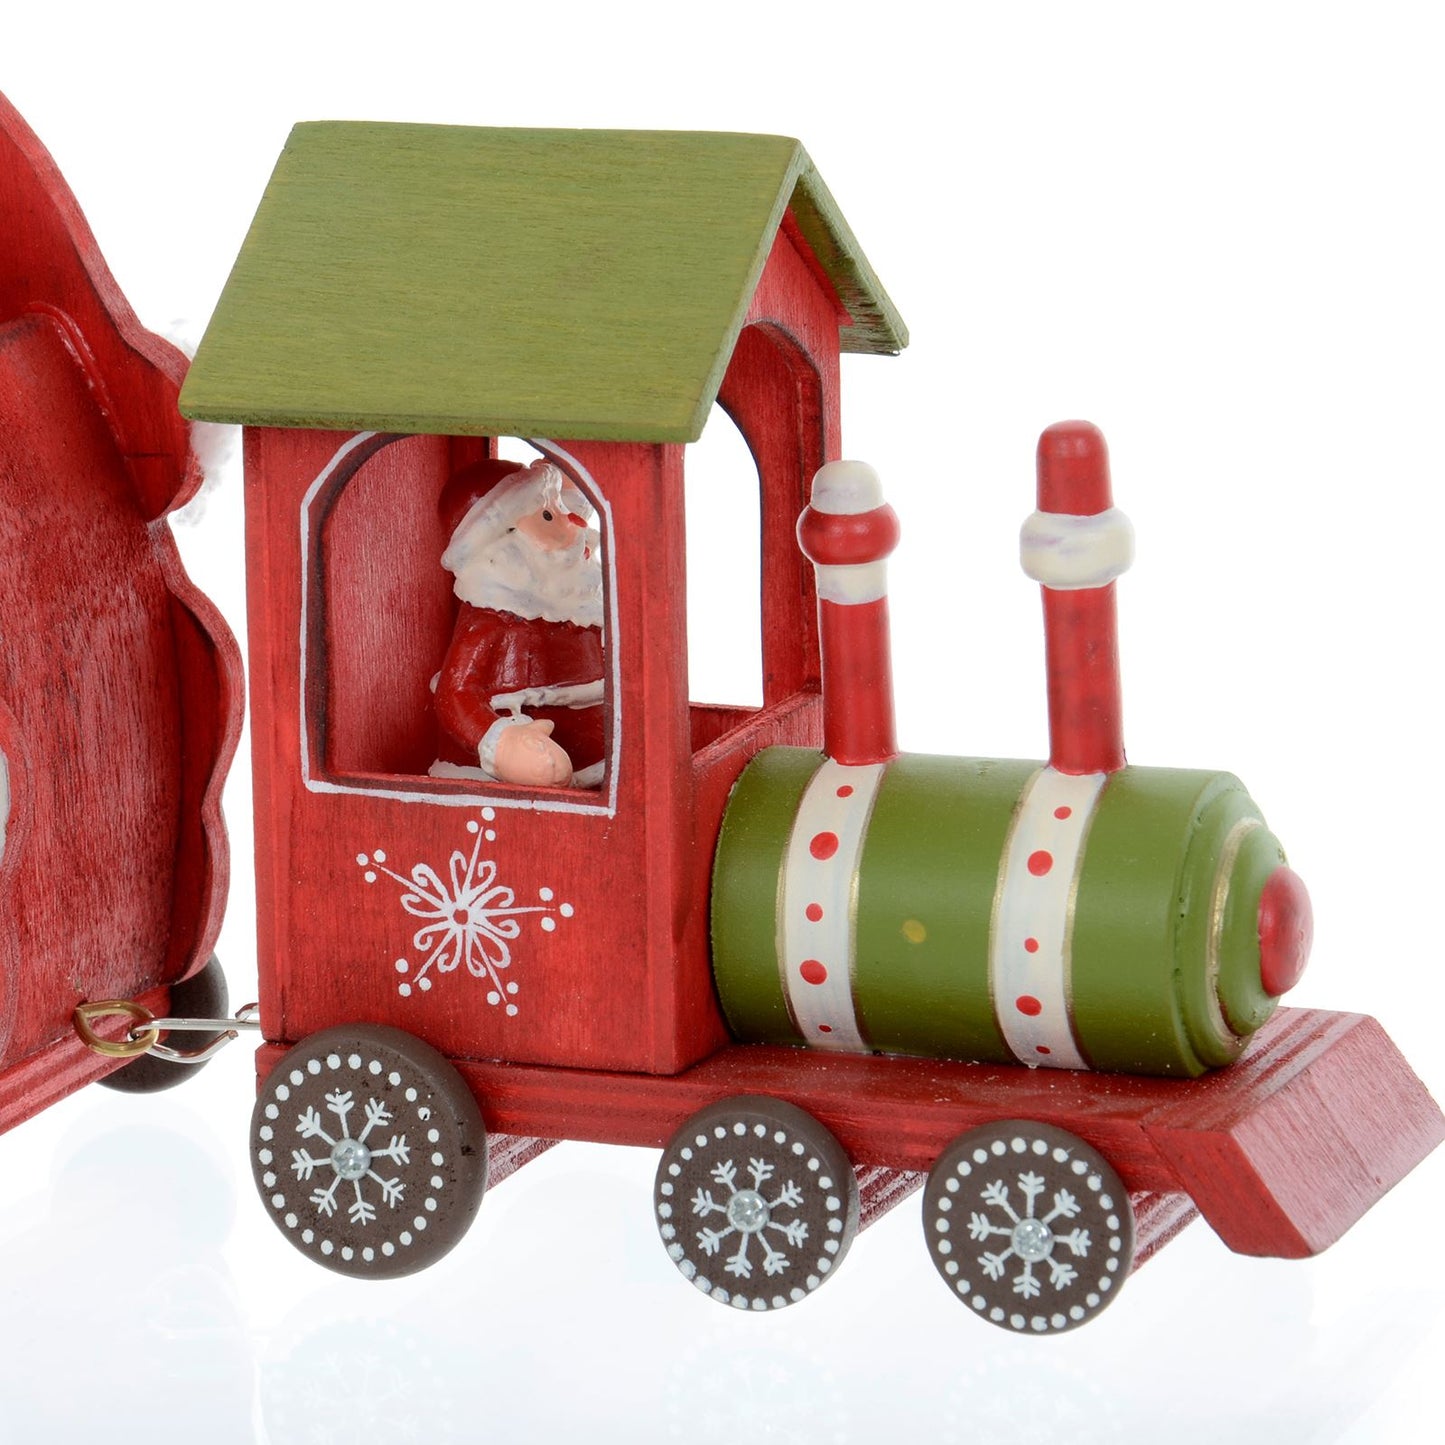 Mr Crimbo Santa Train Wooden Christmas Decoration Moving - MrCrimbo.co.uk -XS5127 - -christmas decor